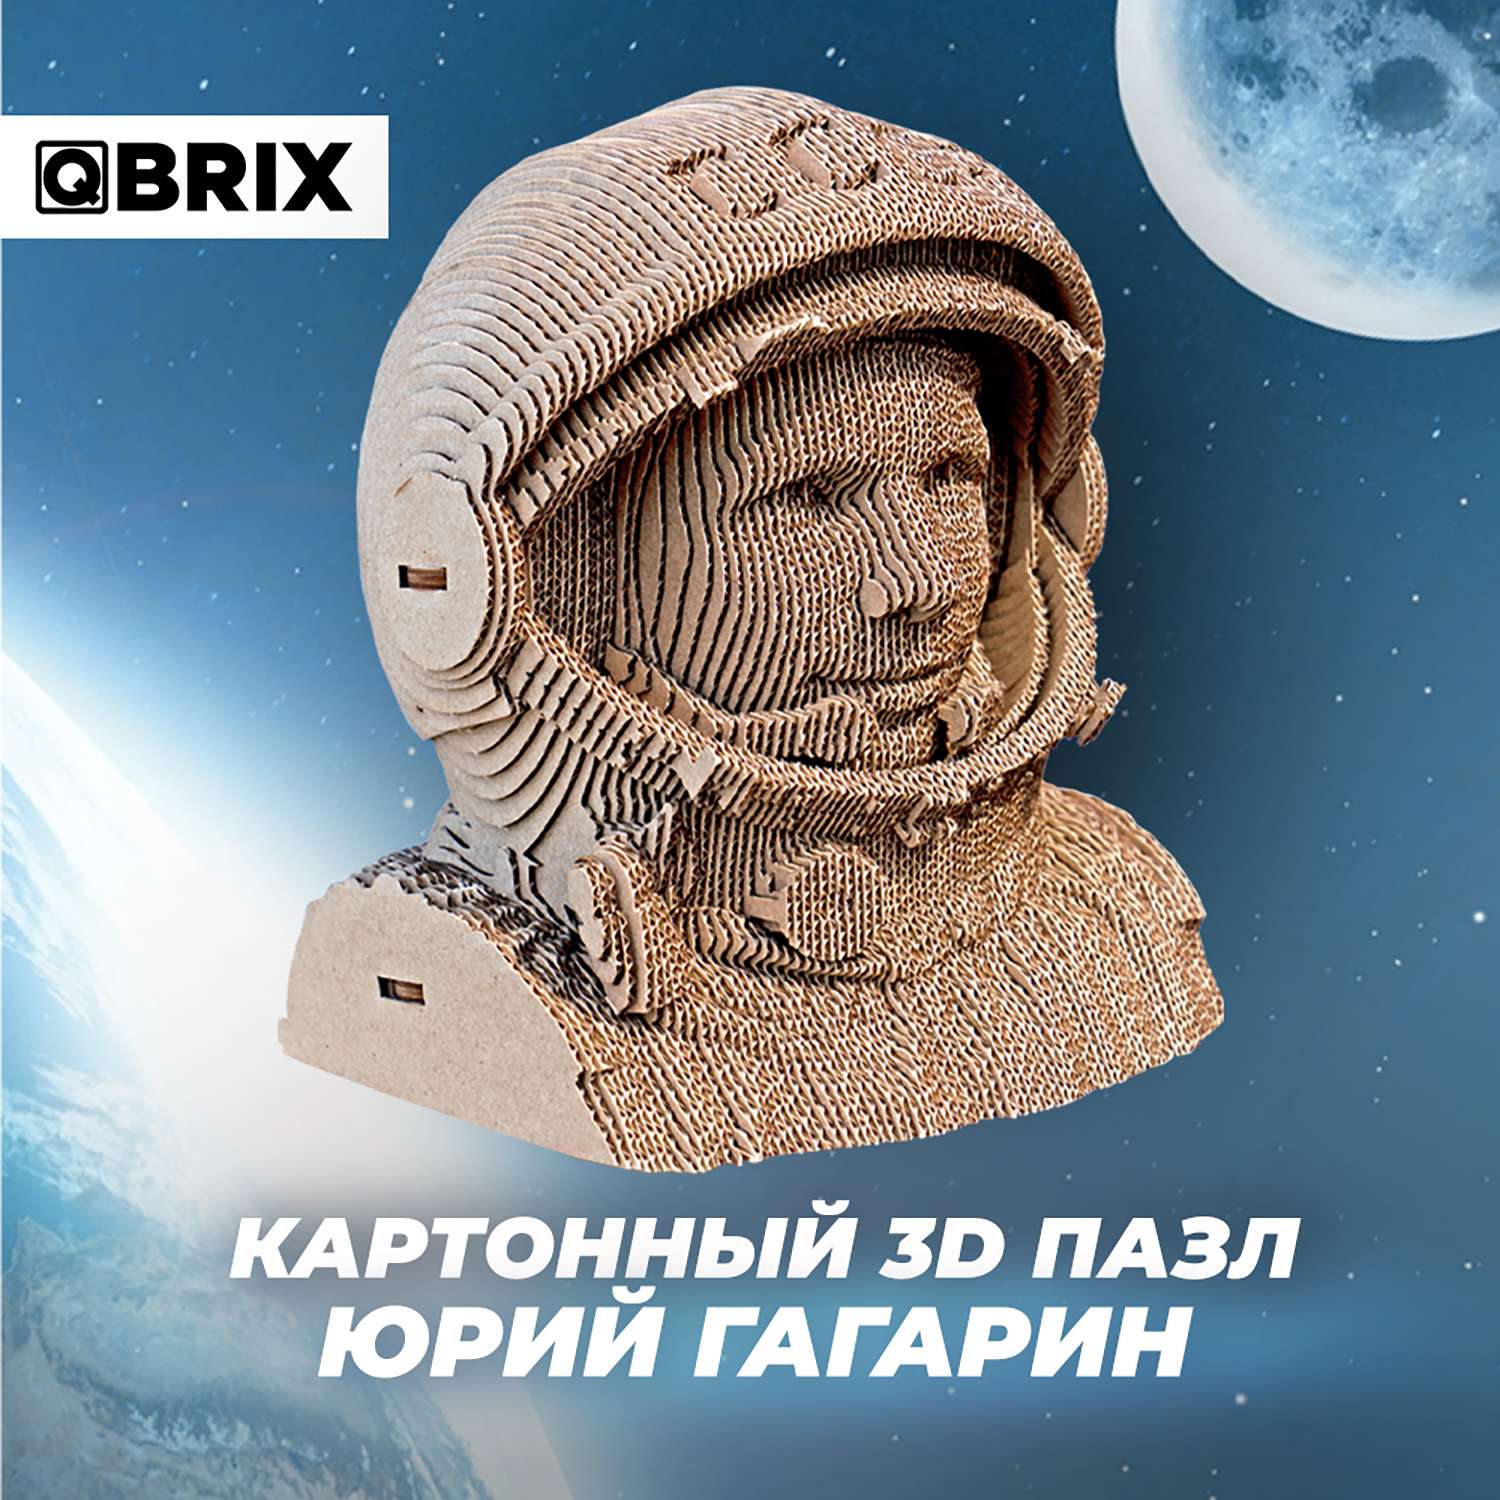 Конструктор QBRIX 3D картонный Юрий Гагарин 20008 20008 - фото 2